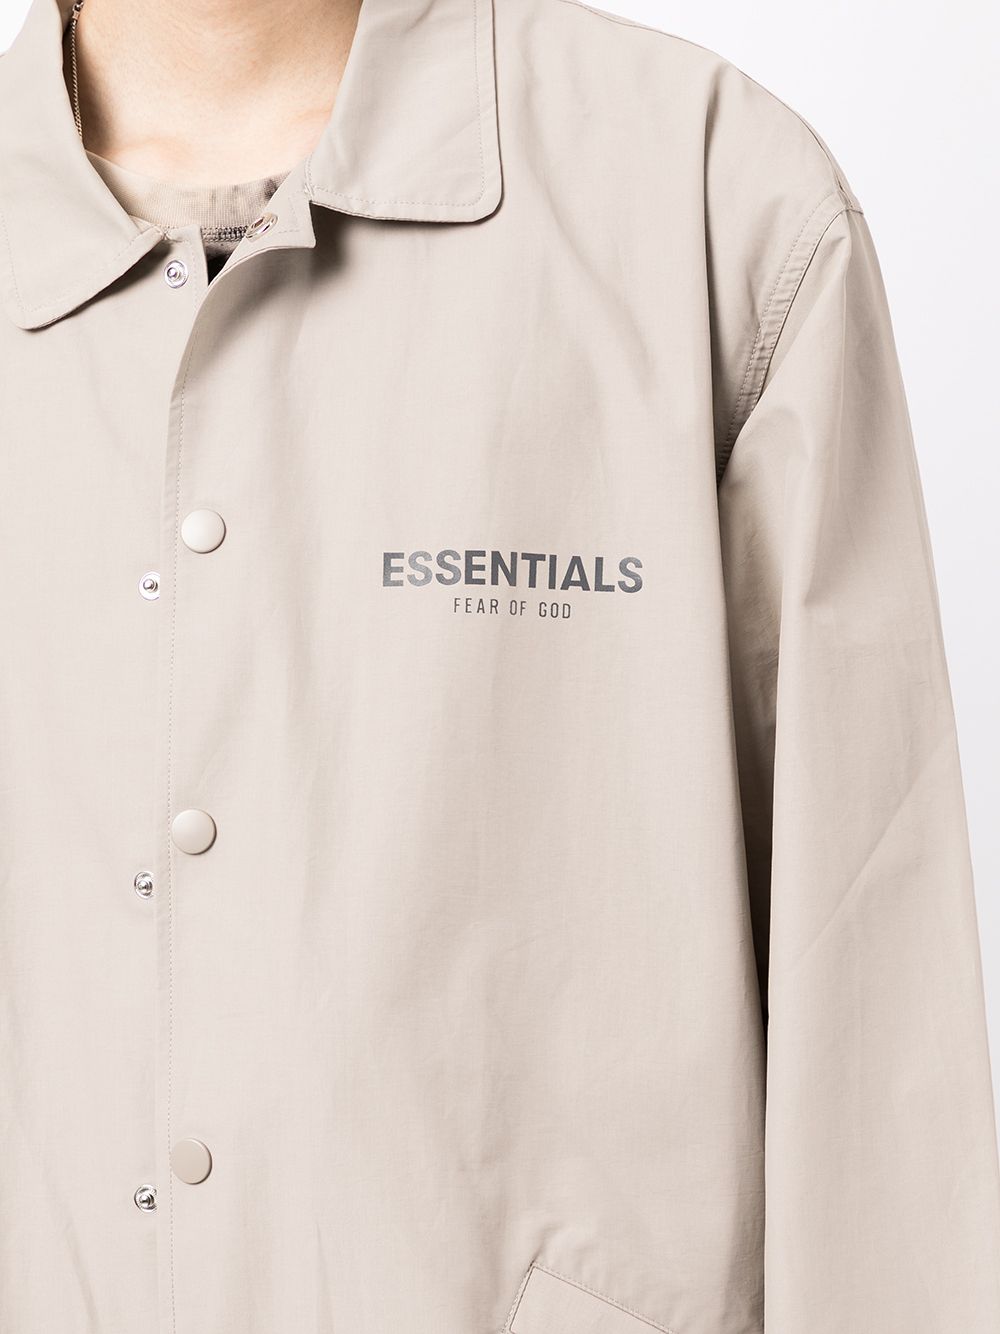 фото Fear of god essentials куртка с логотипом